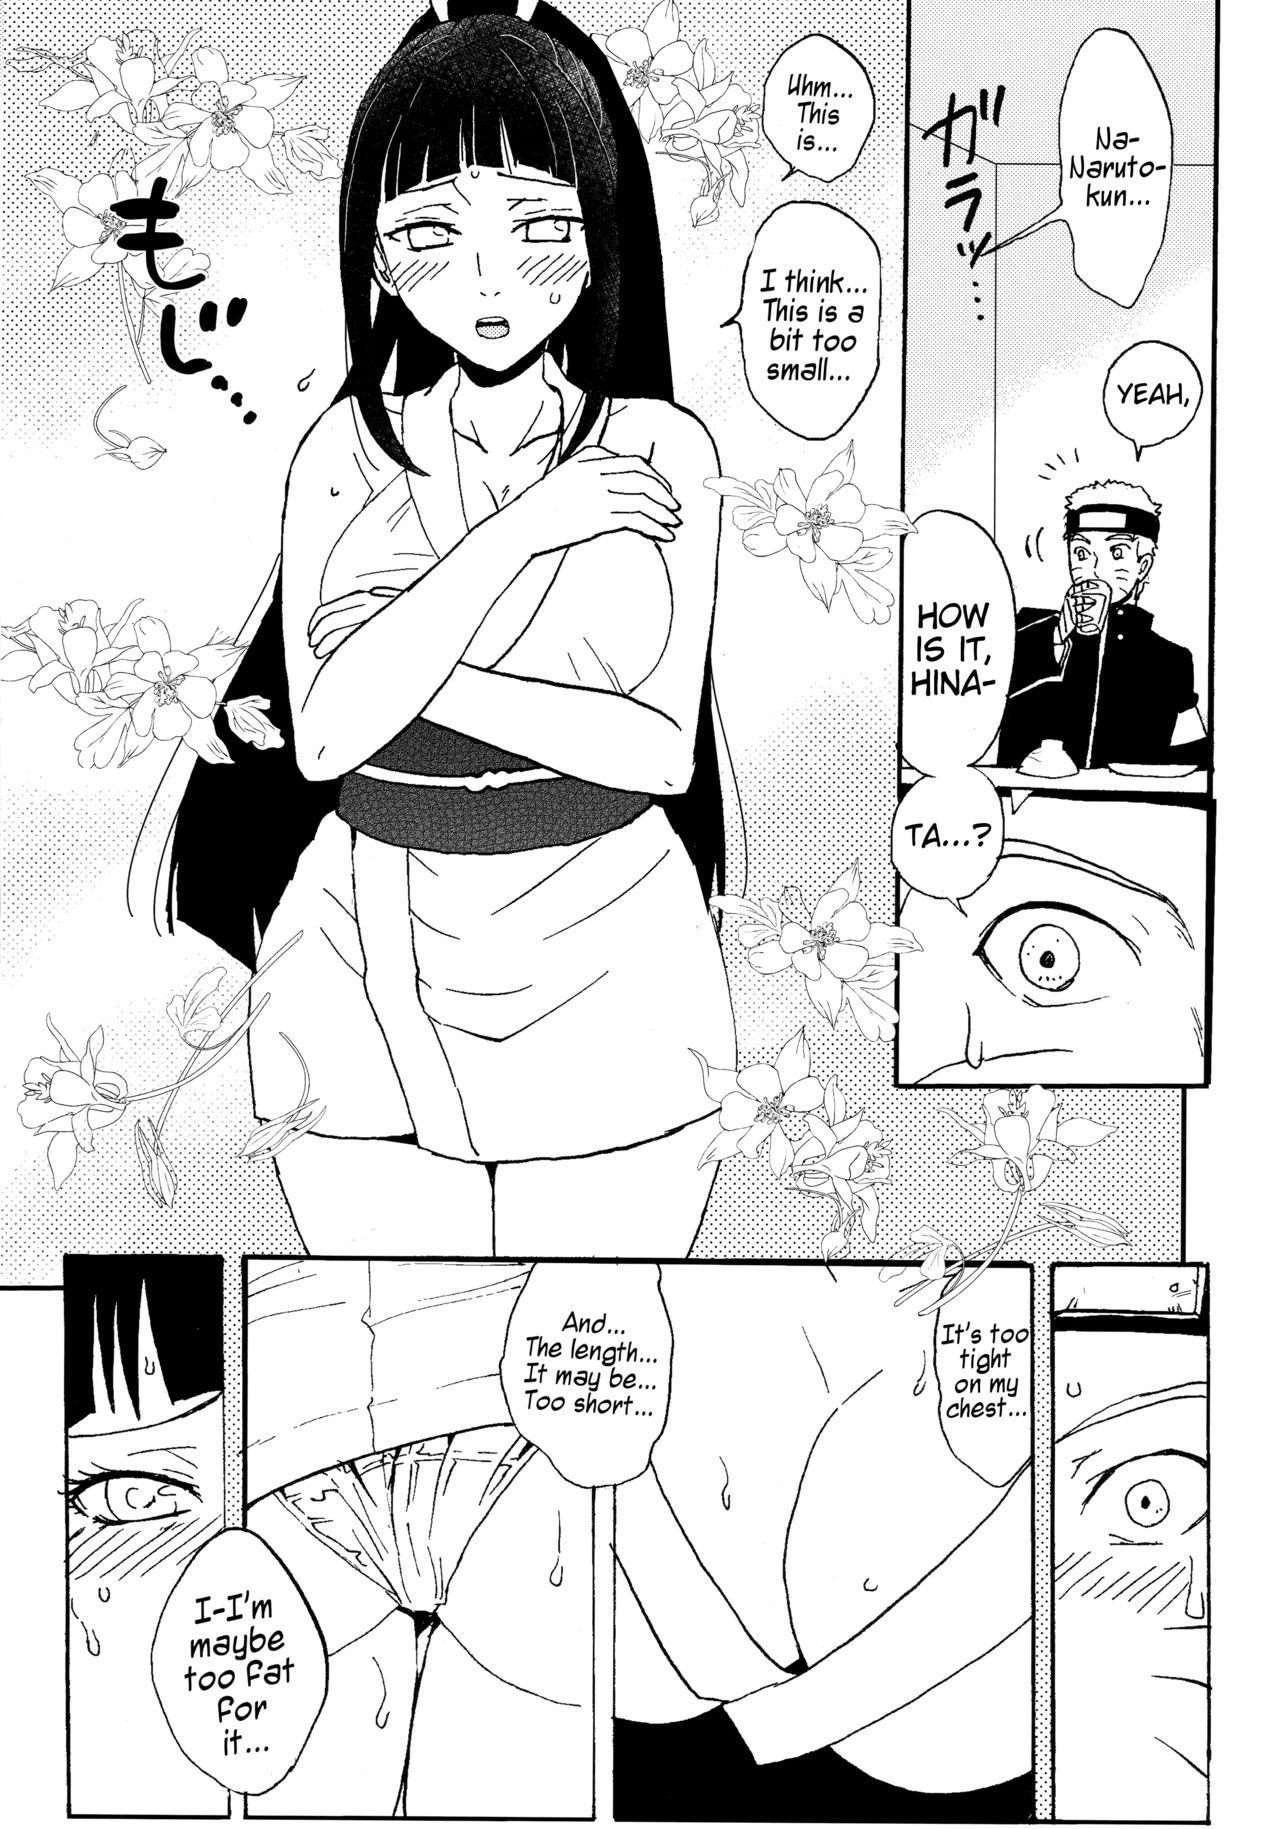 Amature Sex Shinkon Hinata no Kunoichi Cosplay dattebayo! | Newlywed Hinata's kunoichi cosplay, dattebayo! - Naruto Semen - Page 4